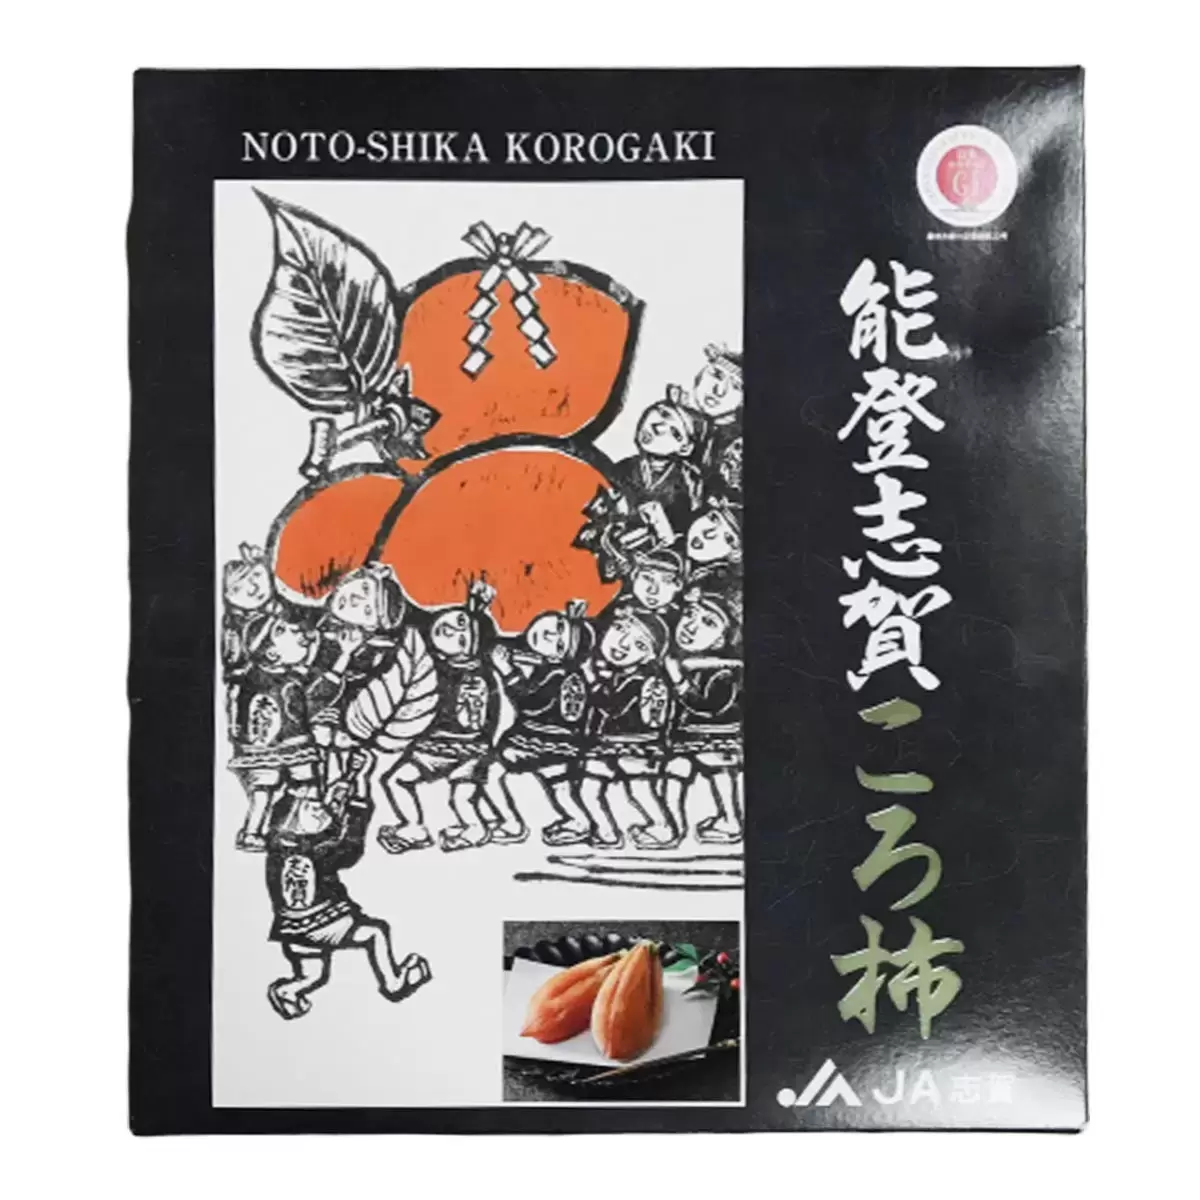 日本能登柿餅禮盒 800公克